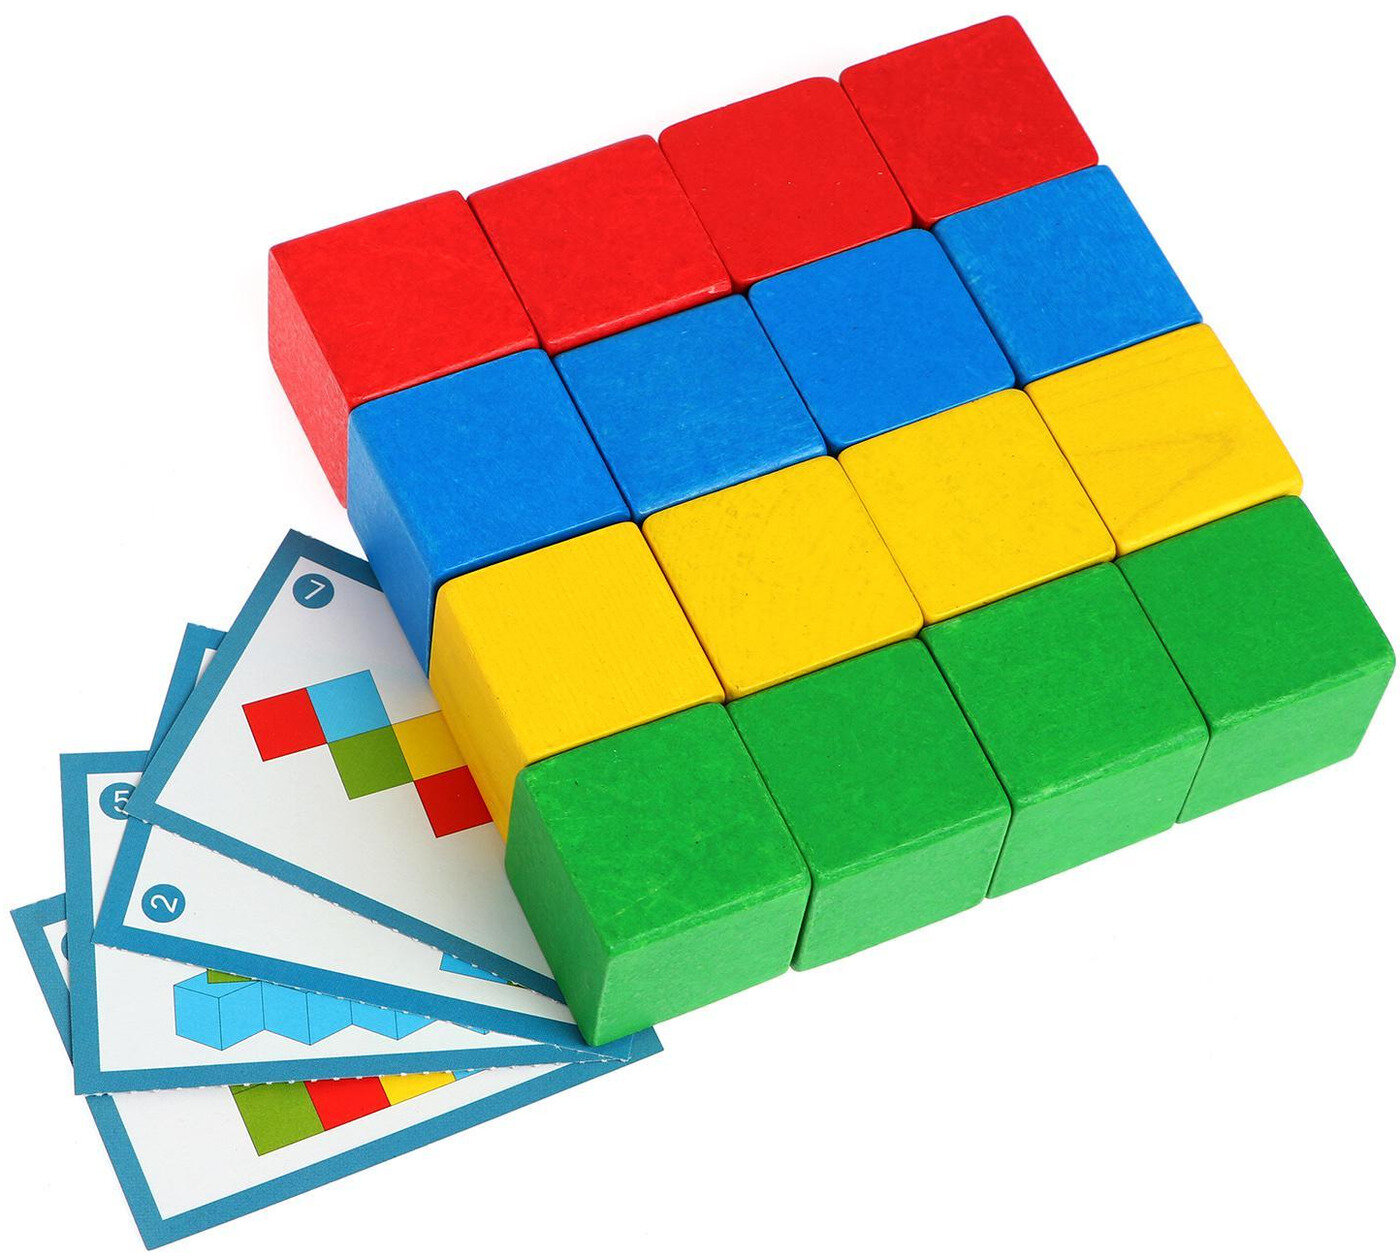 Деревянные логические цветные кубики Краснокамская игрушка "Мозаика", 16 элементов + 8 карточек с заданиями